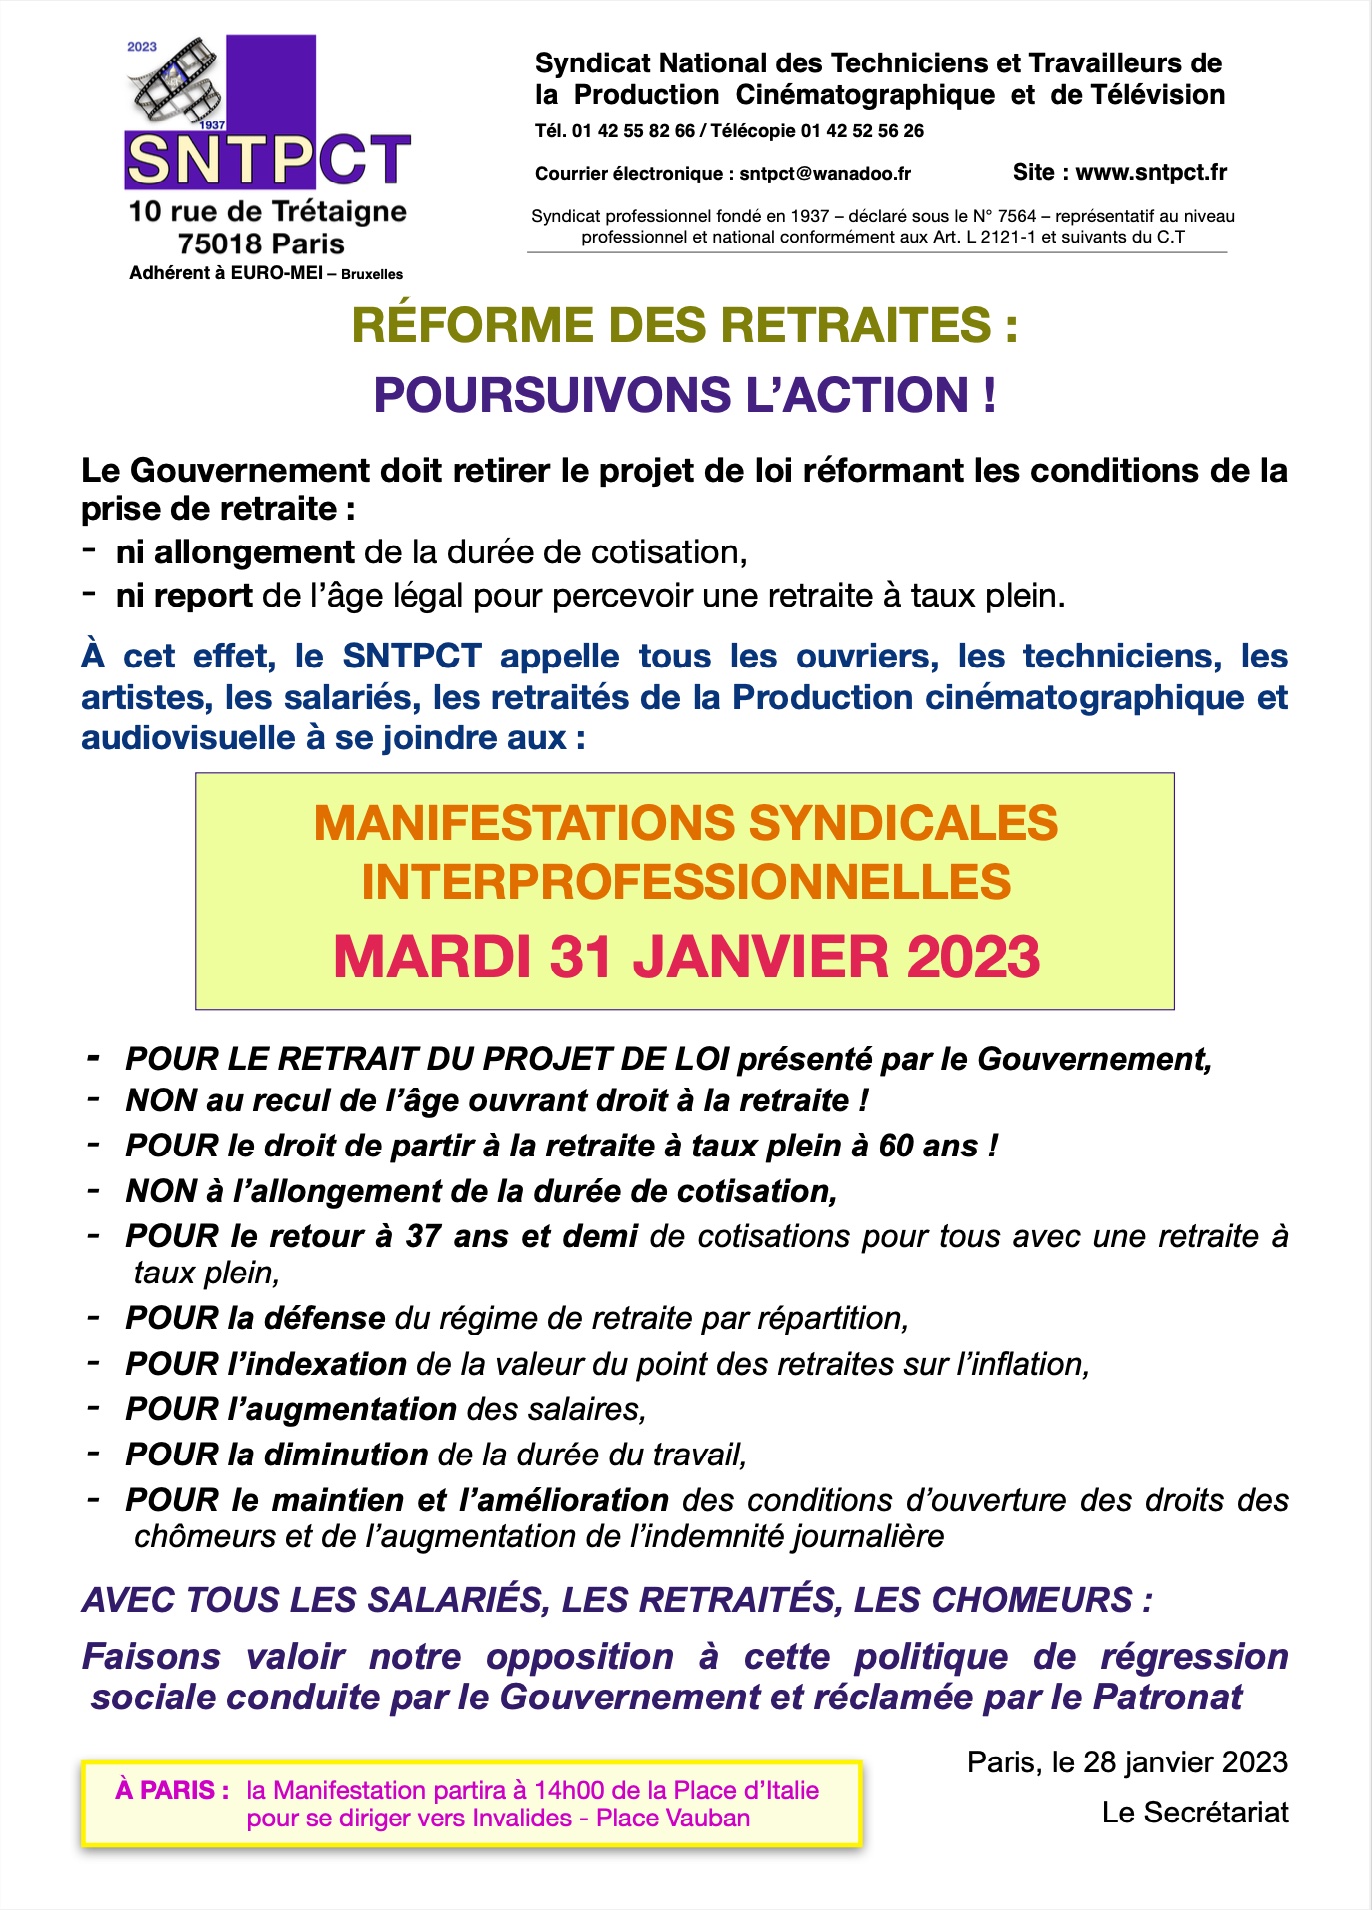 SNTPCT pour Manifestations interro retraites du 31 janvier 2023